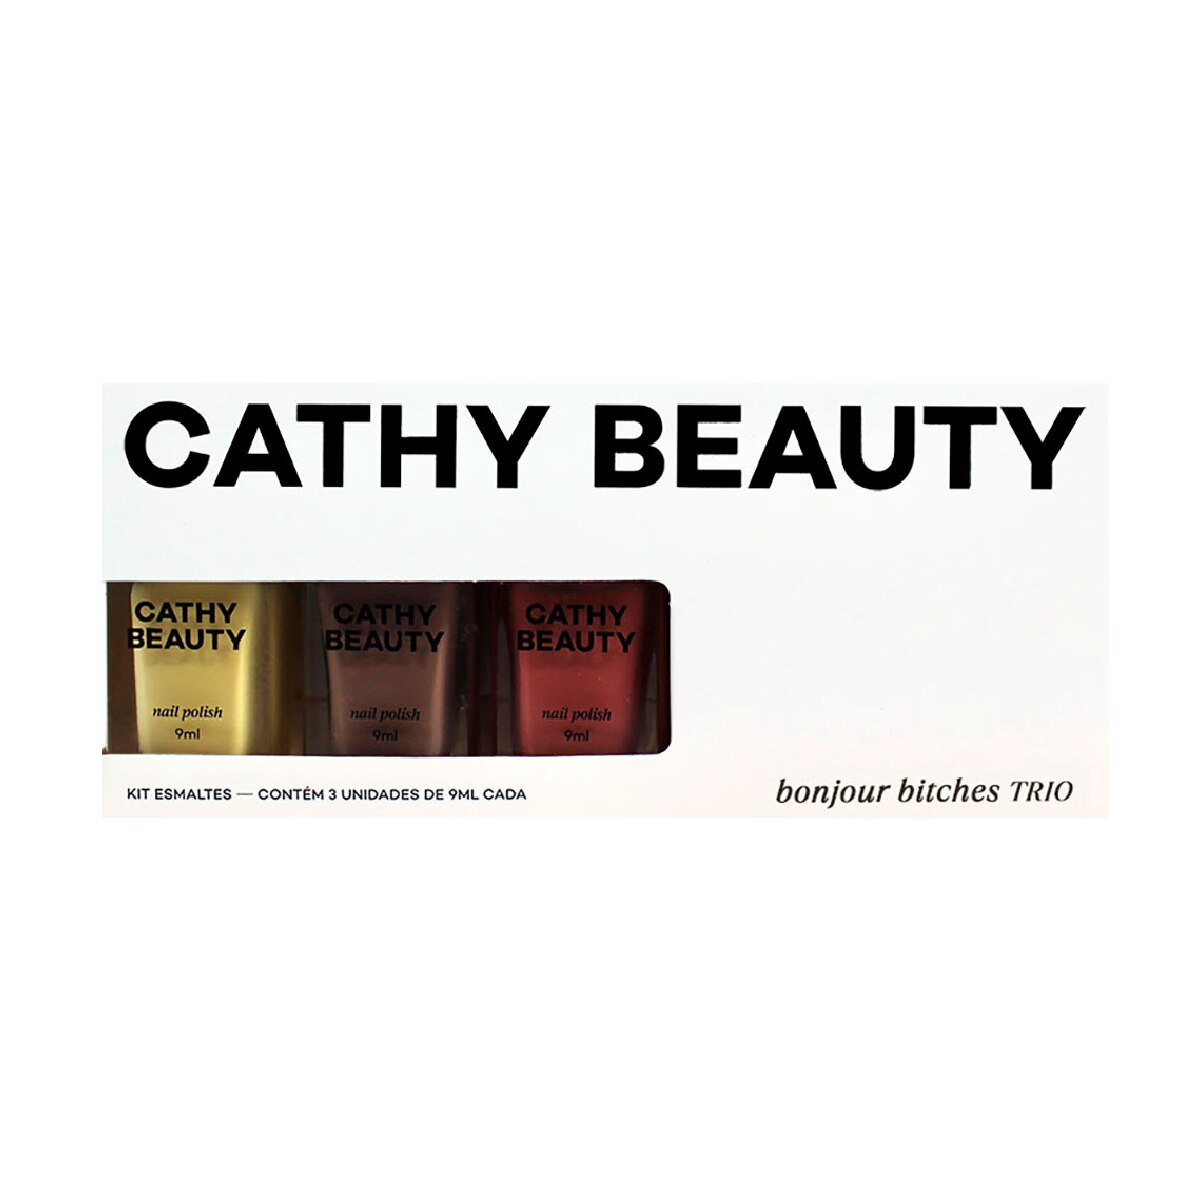 Kit de Esmaltes Cathy Beauty Bonjour Bitches 3 Unidades de 9ml